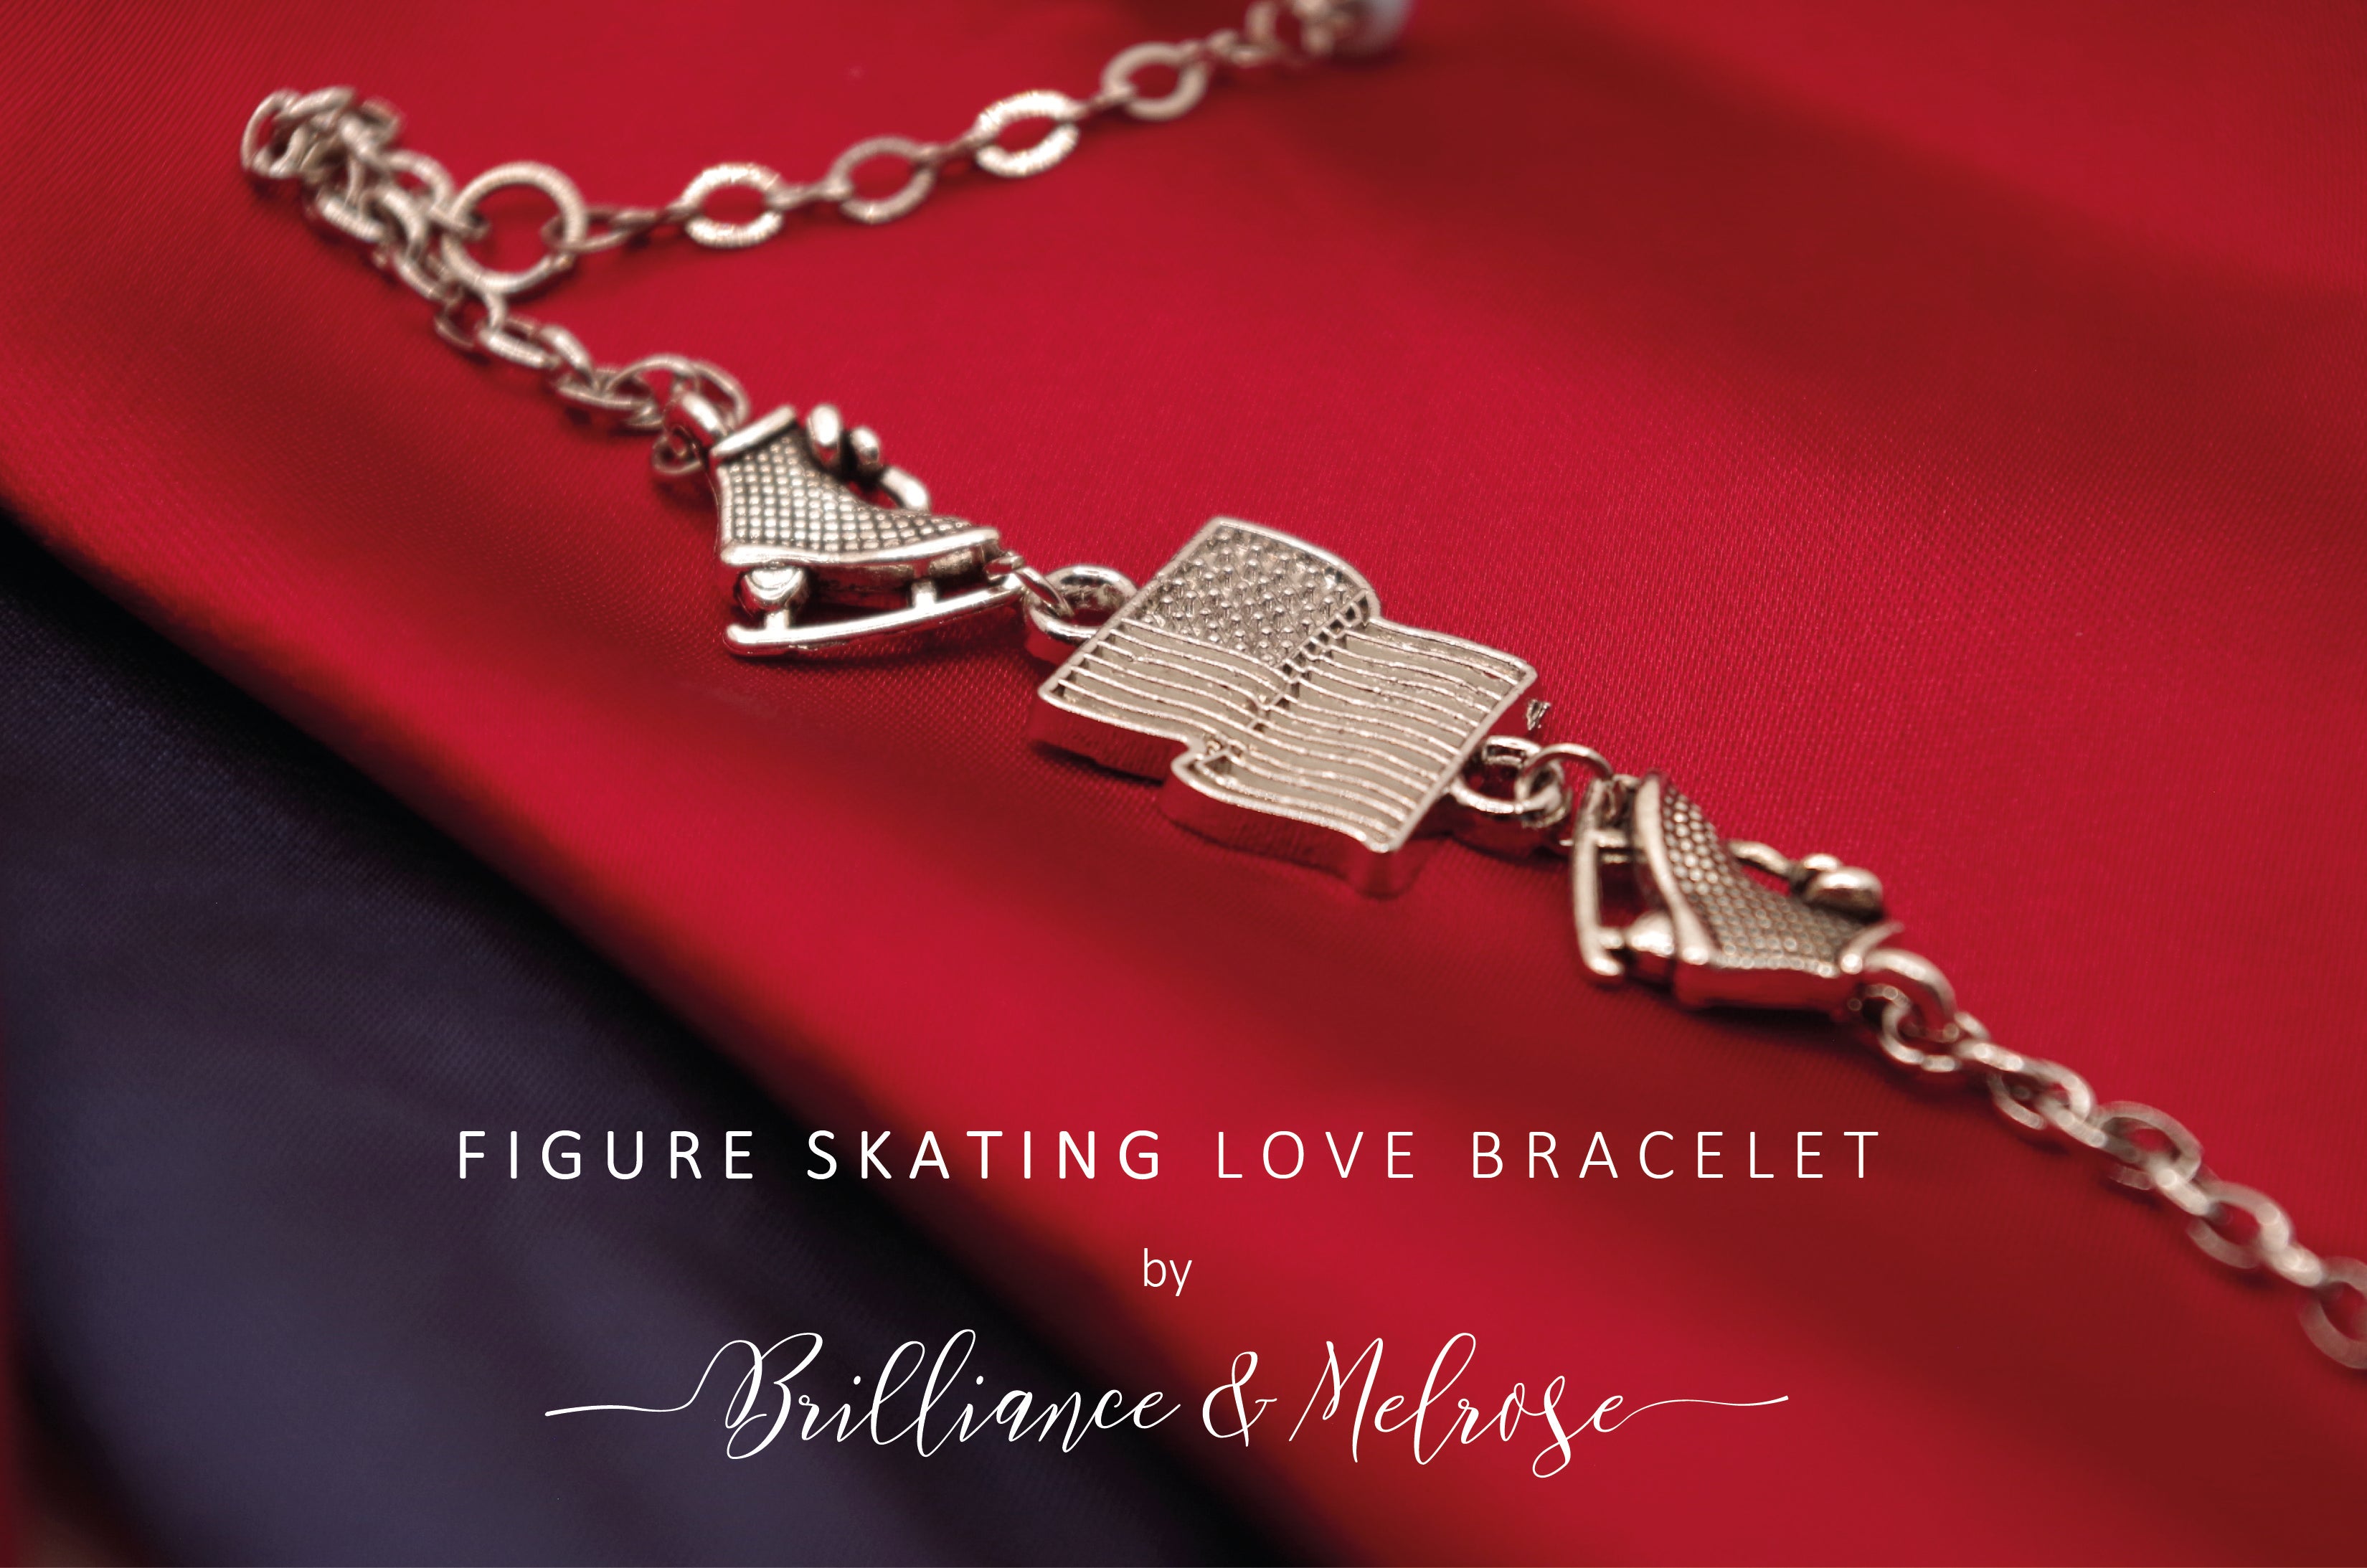 America's Figure Skating Love Bracelet